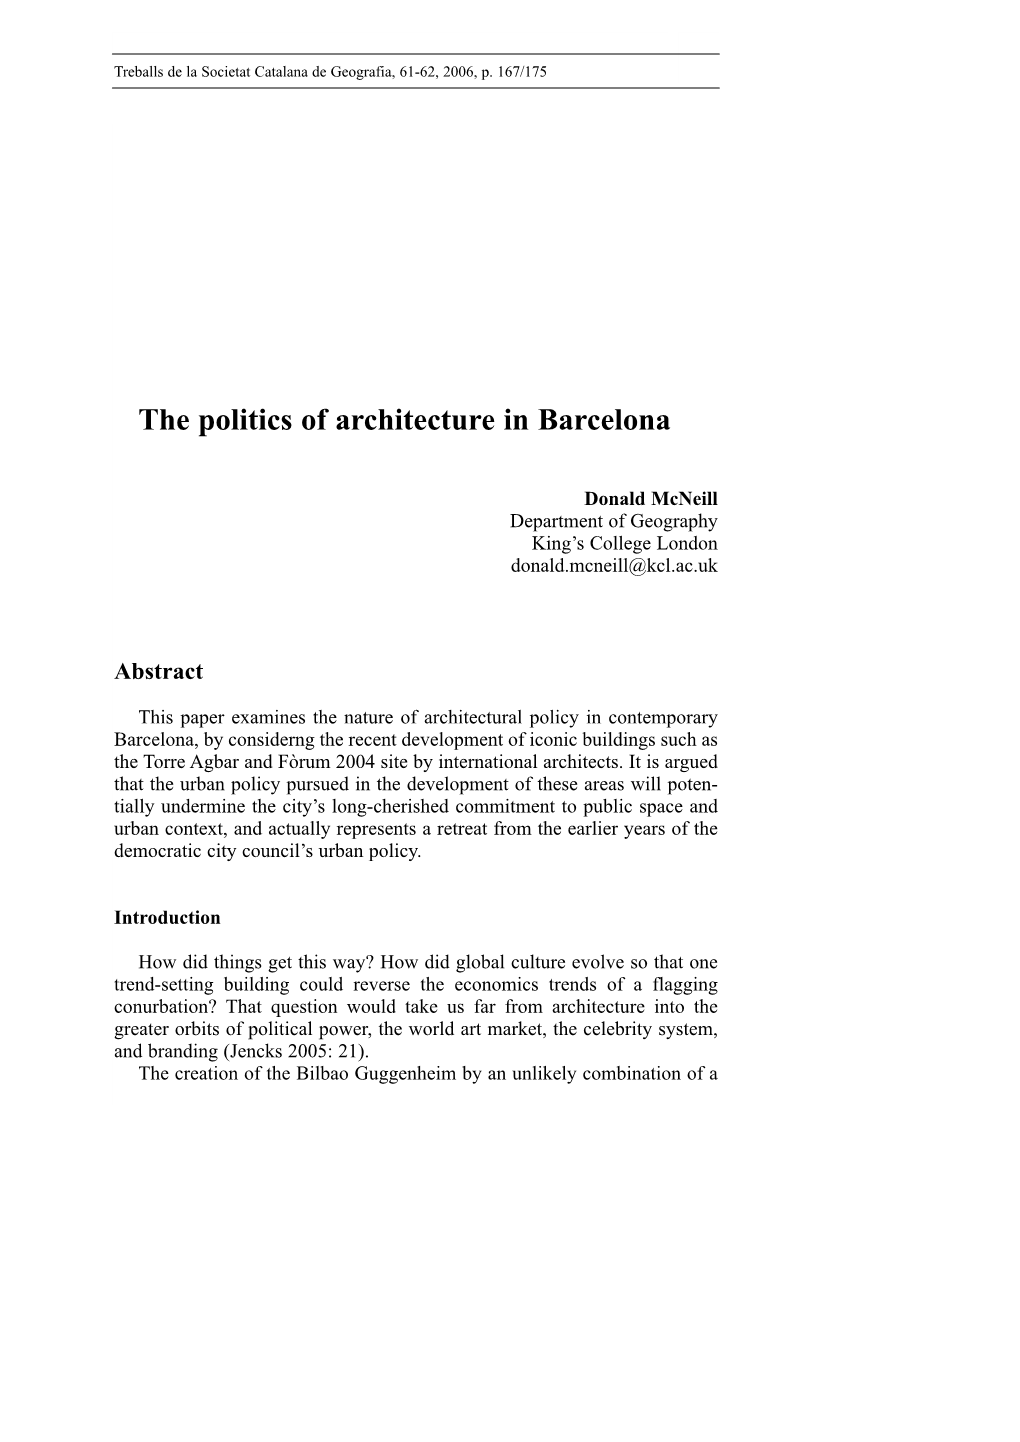 The Politics of Architecture in Barcelona